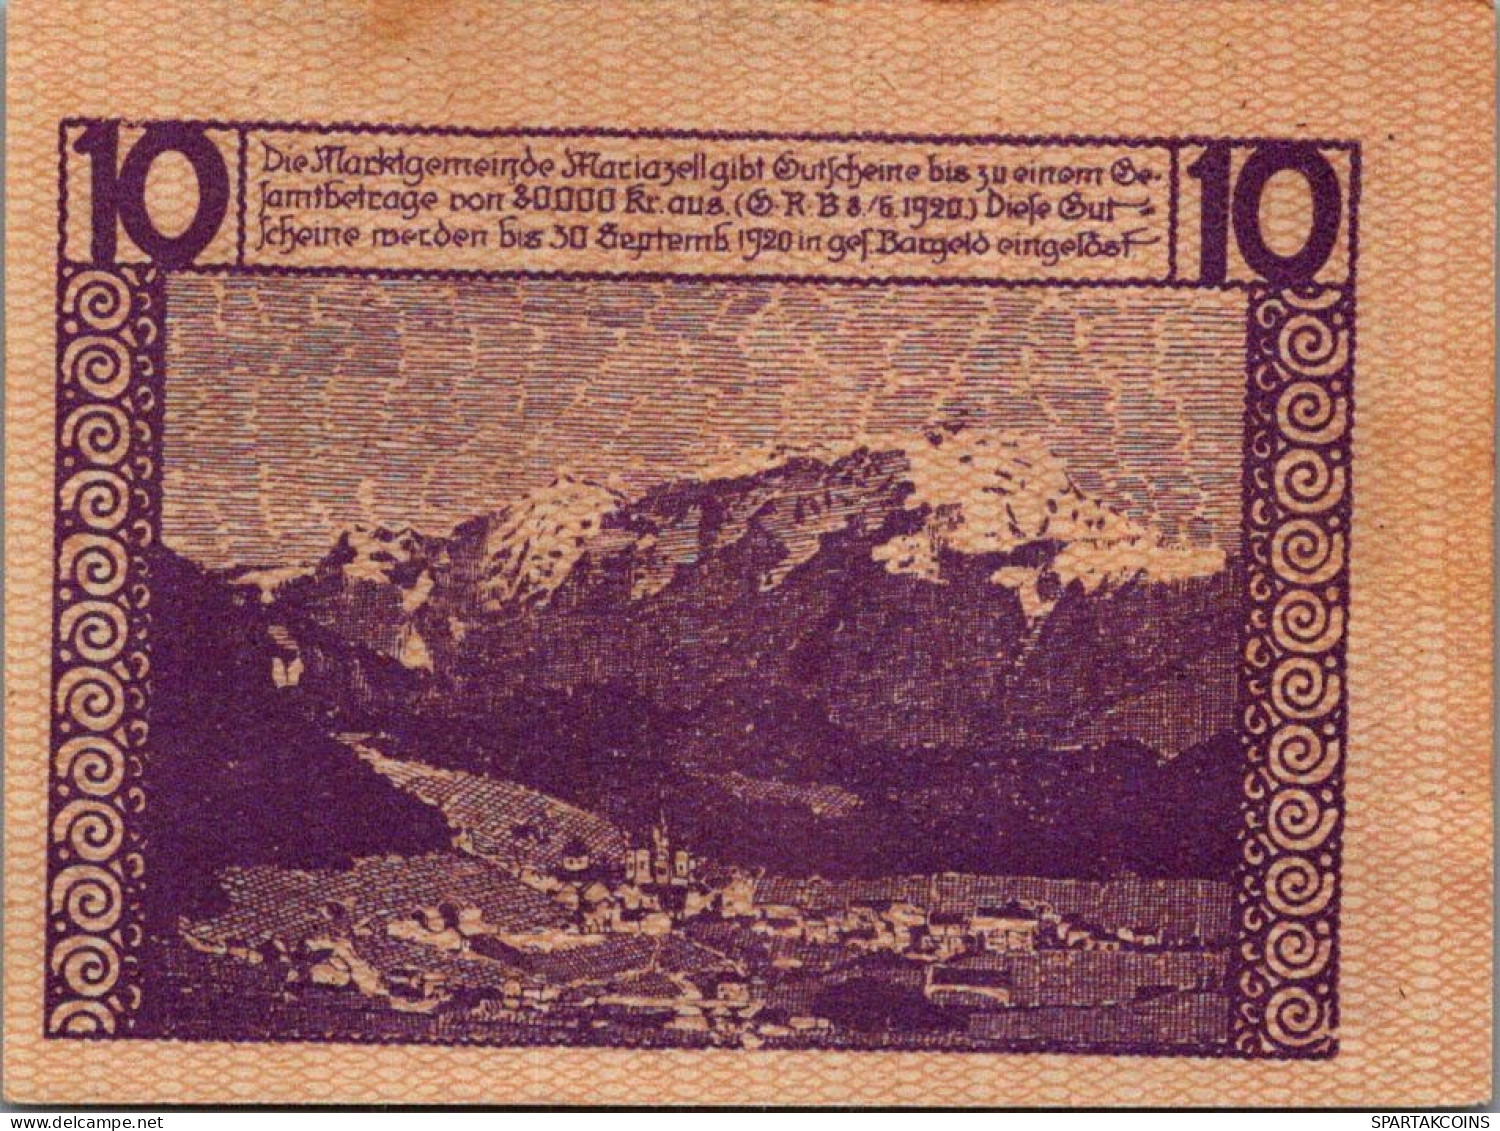 10 HELLER 1920 Stadt MARIAZELL Styria Österreich Notgeld Papiergeld Banknote #PG933 - [11] Emissions Locales